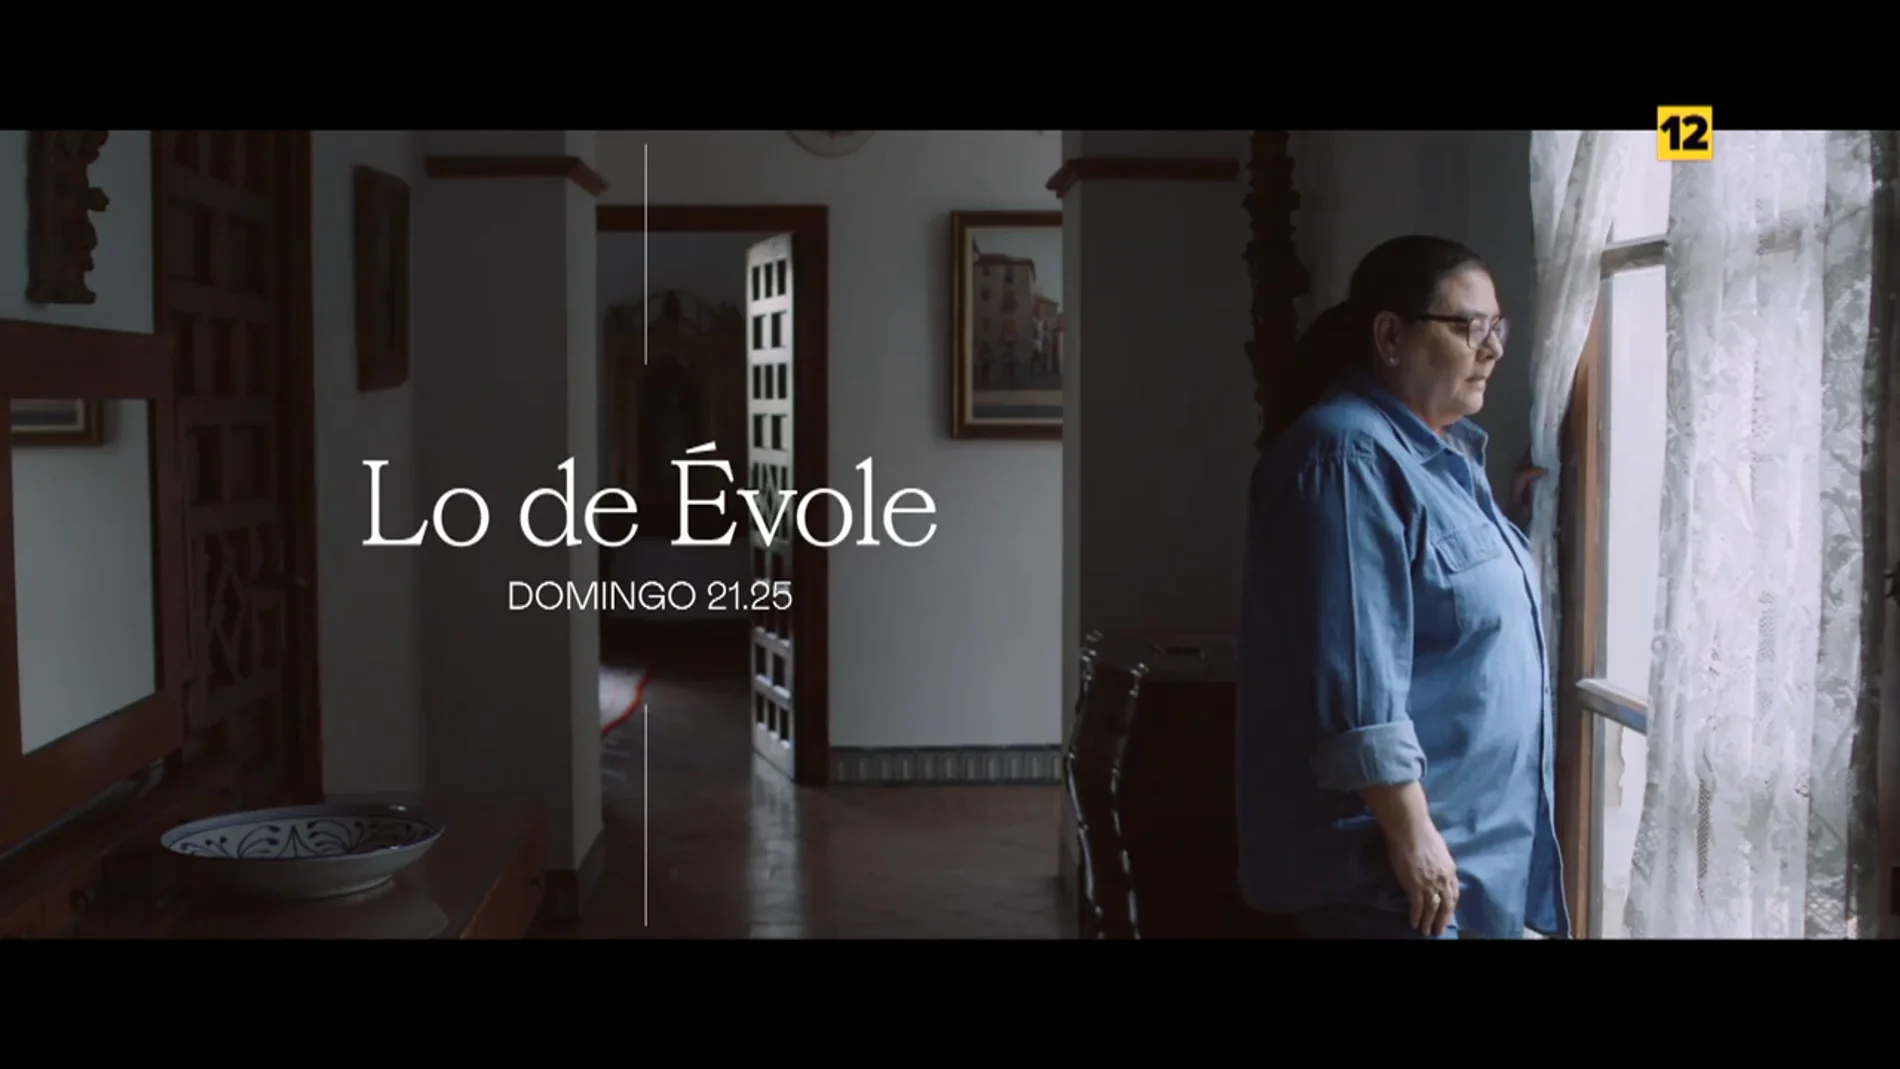 Hoy, en Lo de Évole, María del Monte desmonta prejuicios en su entrevista con Jordi Évole